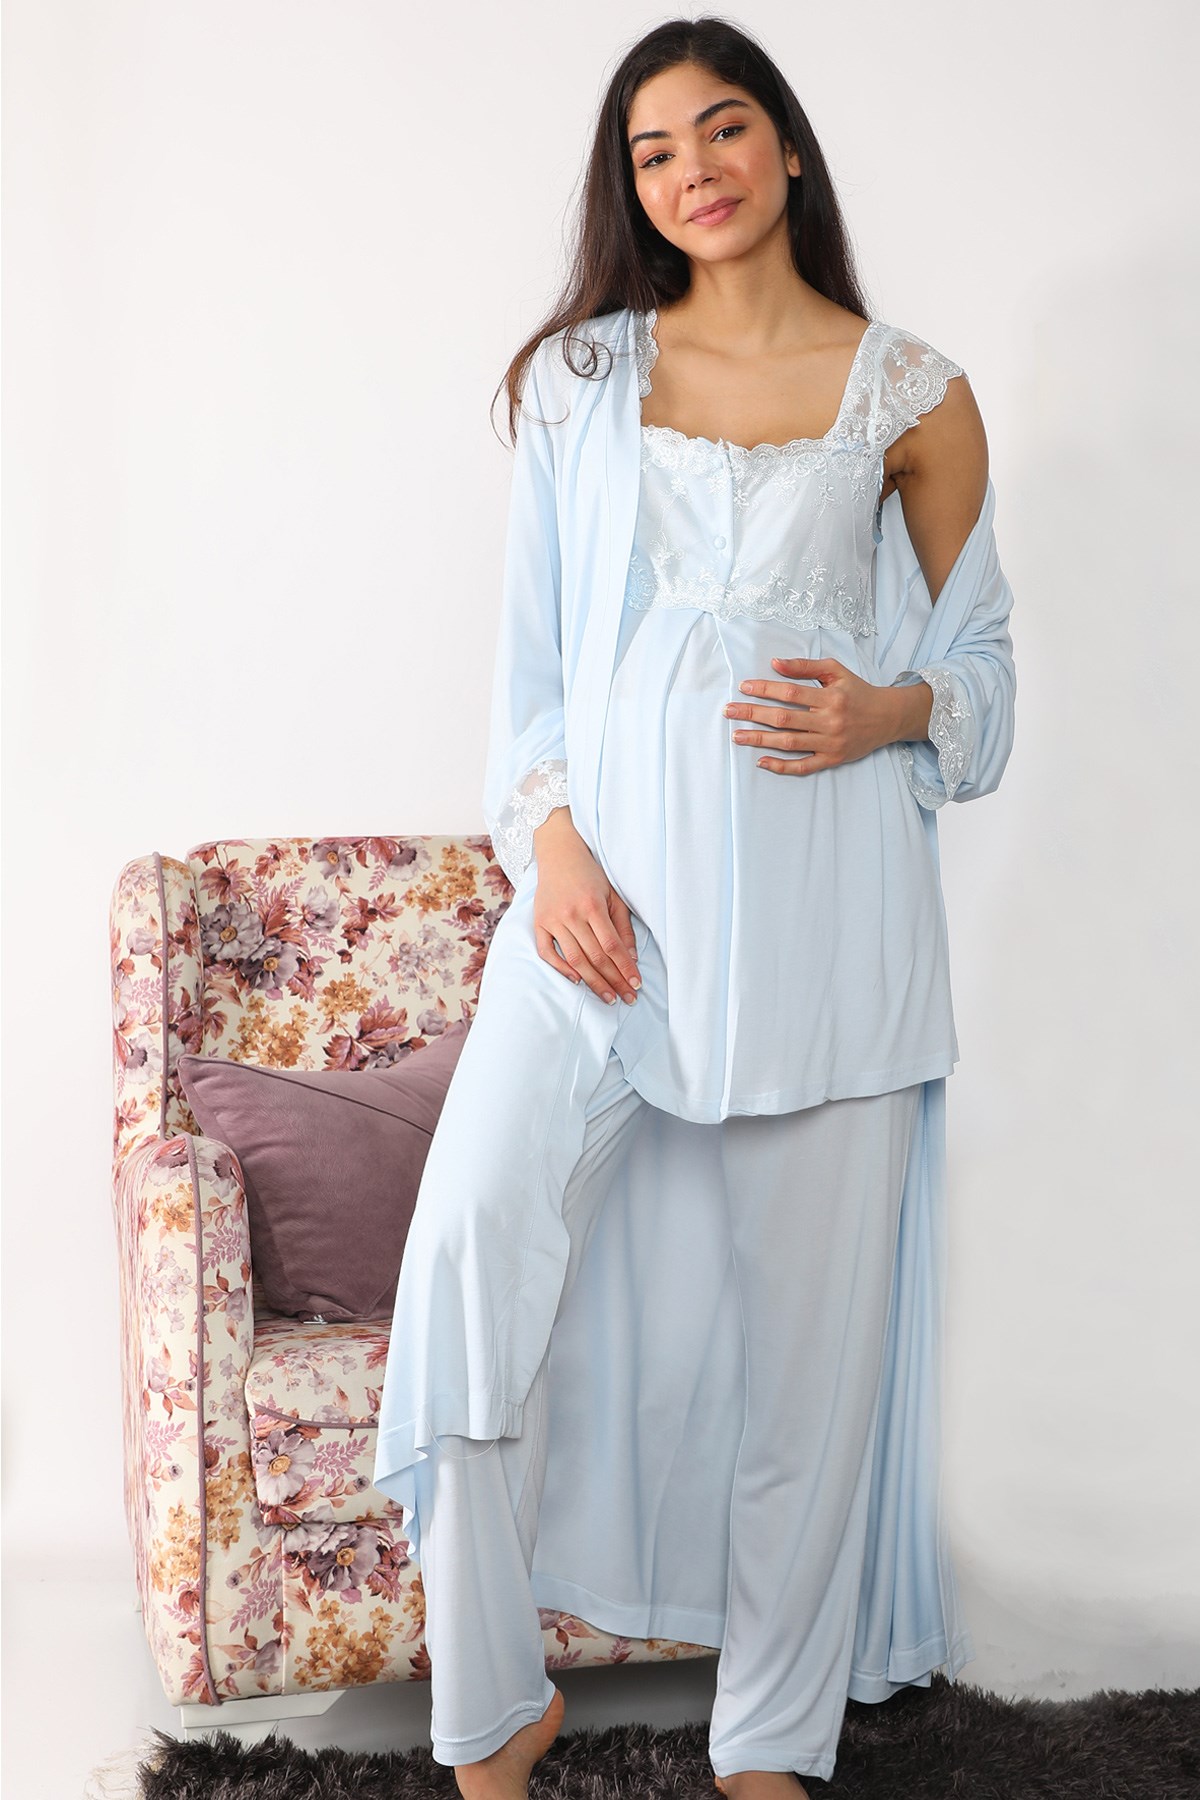 Lohusa Hamile 1094 Maternity Nursing Pajamas Set with Robe